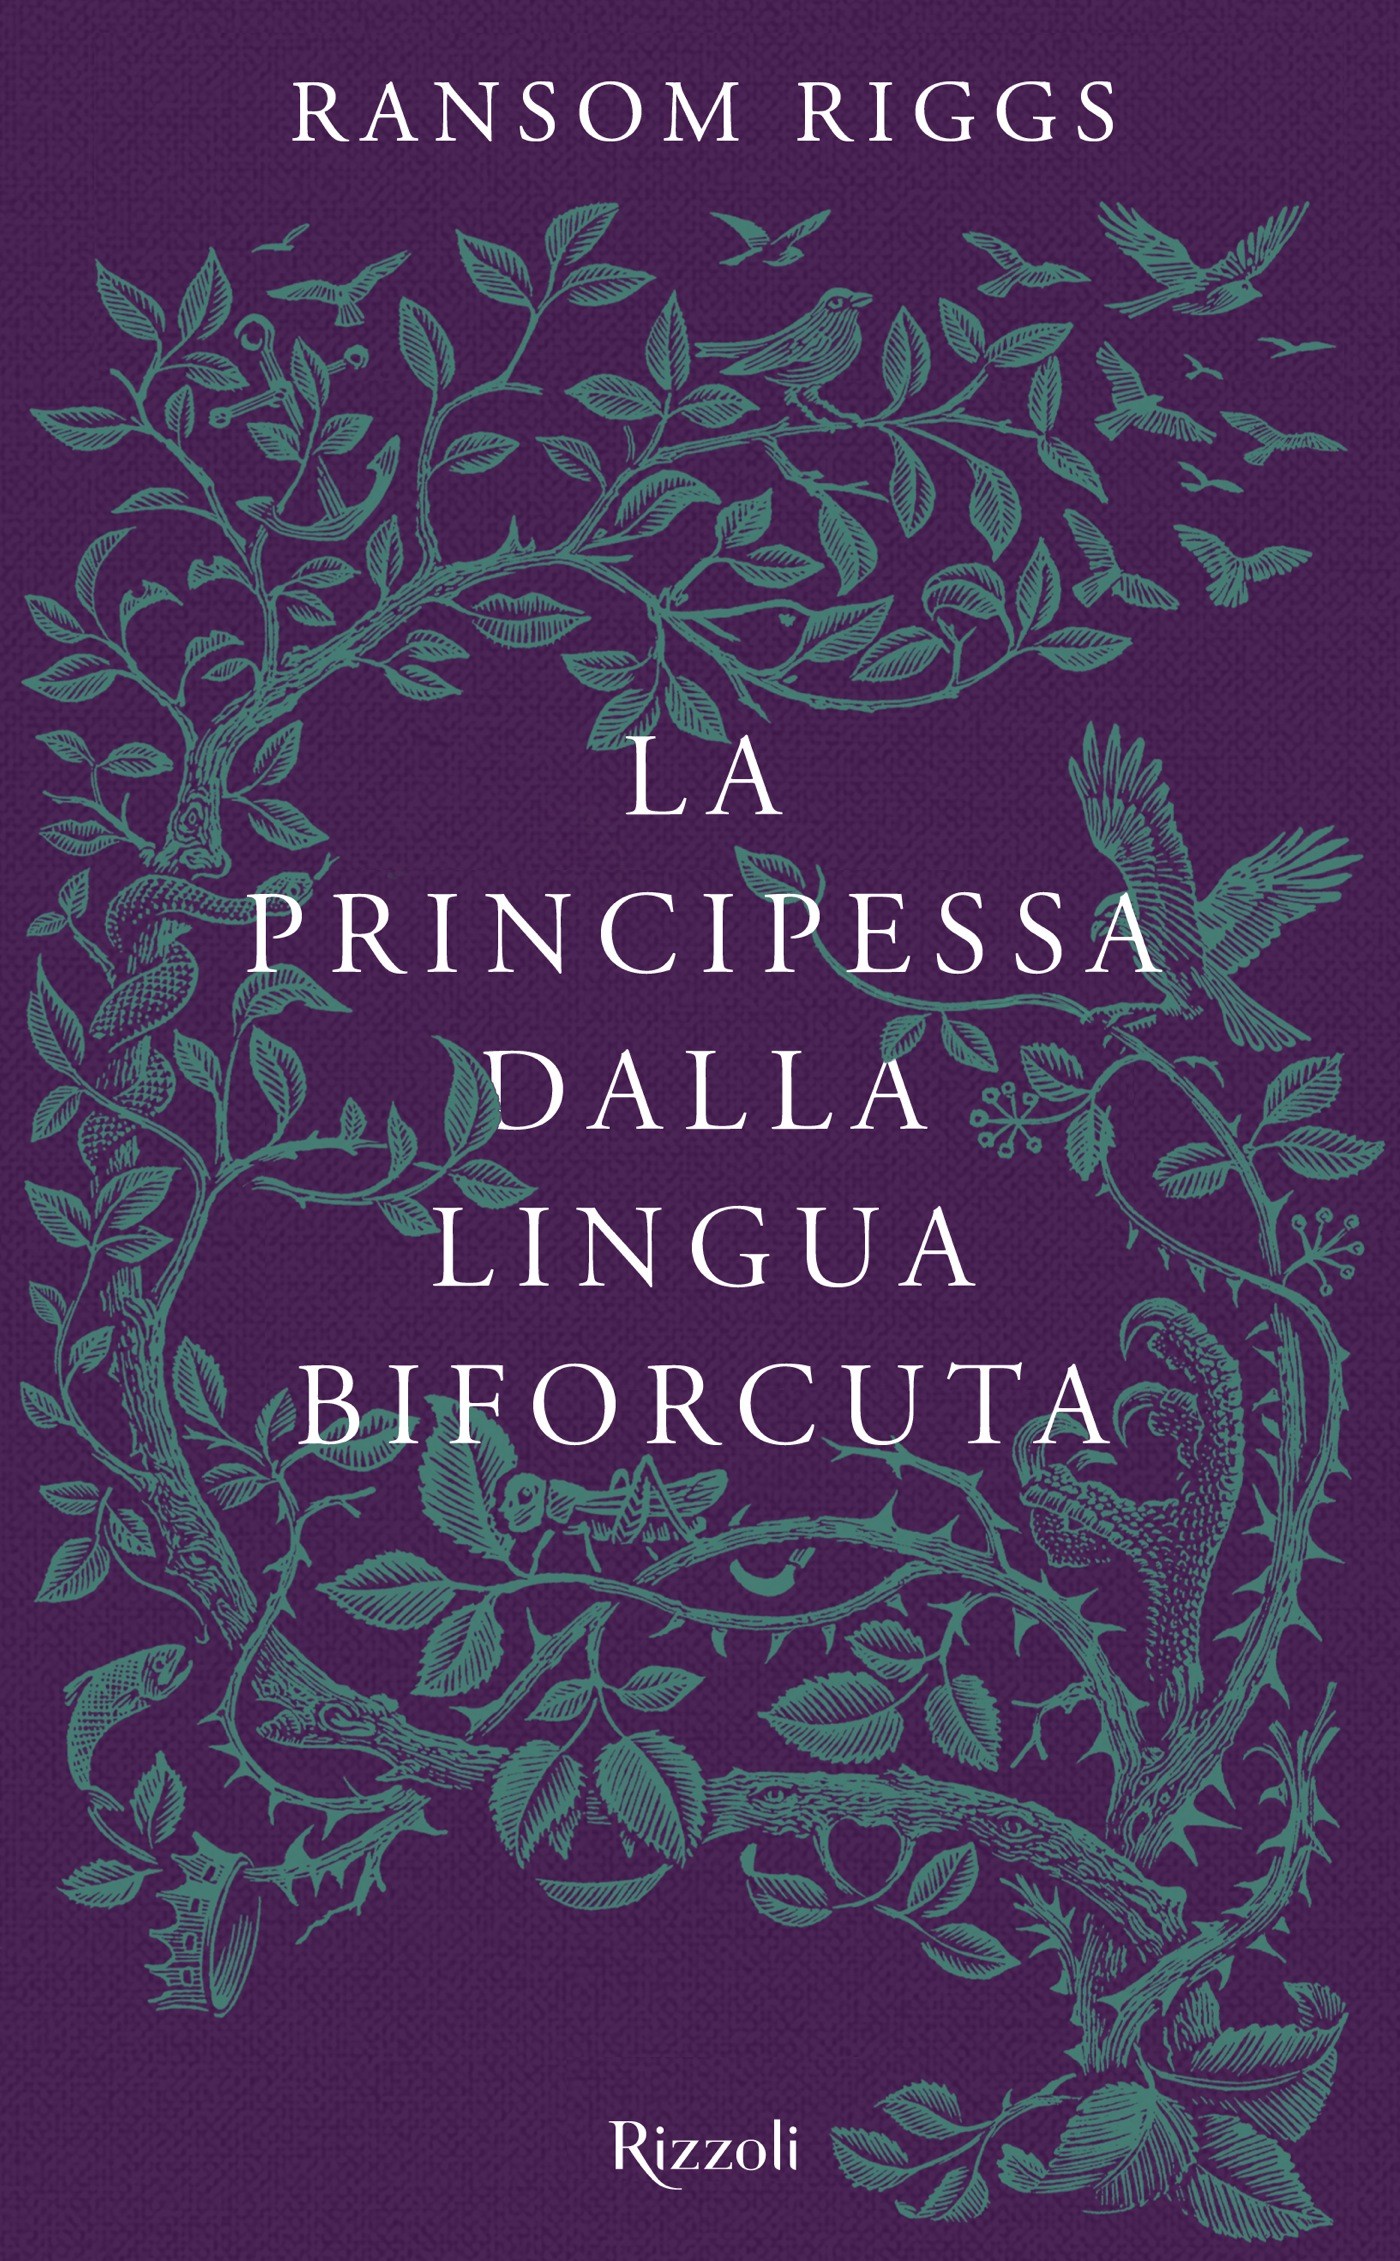 La principessa dalla lingua biforcuta - Librerie.coop